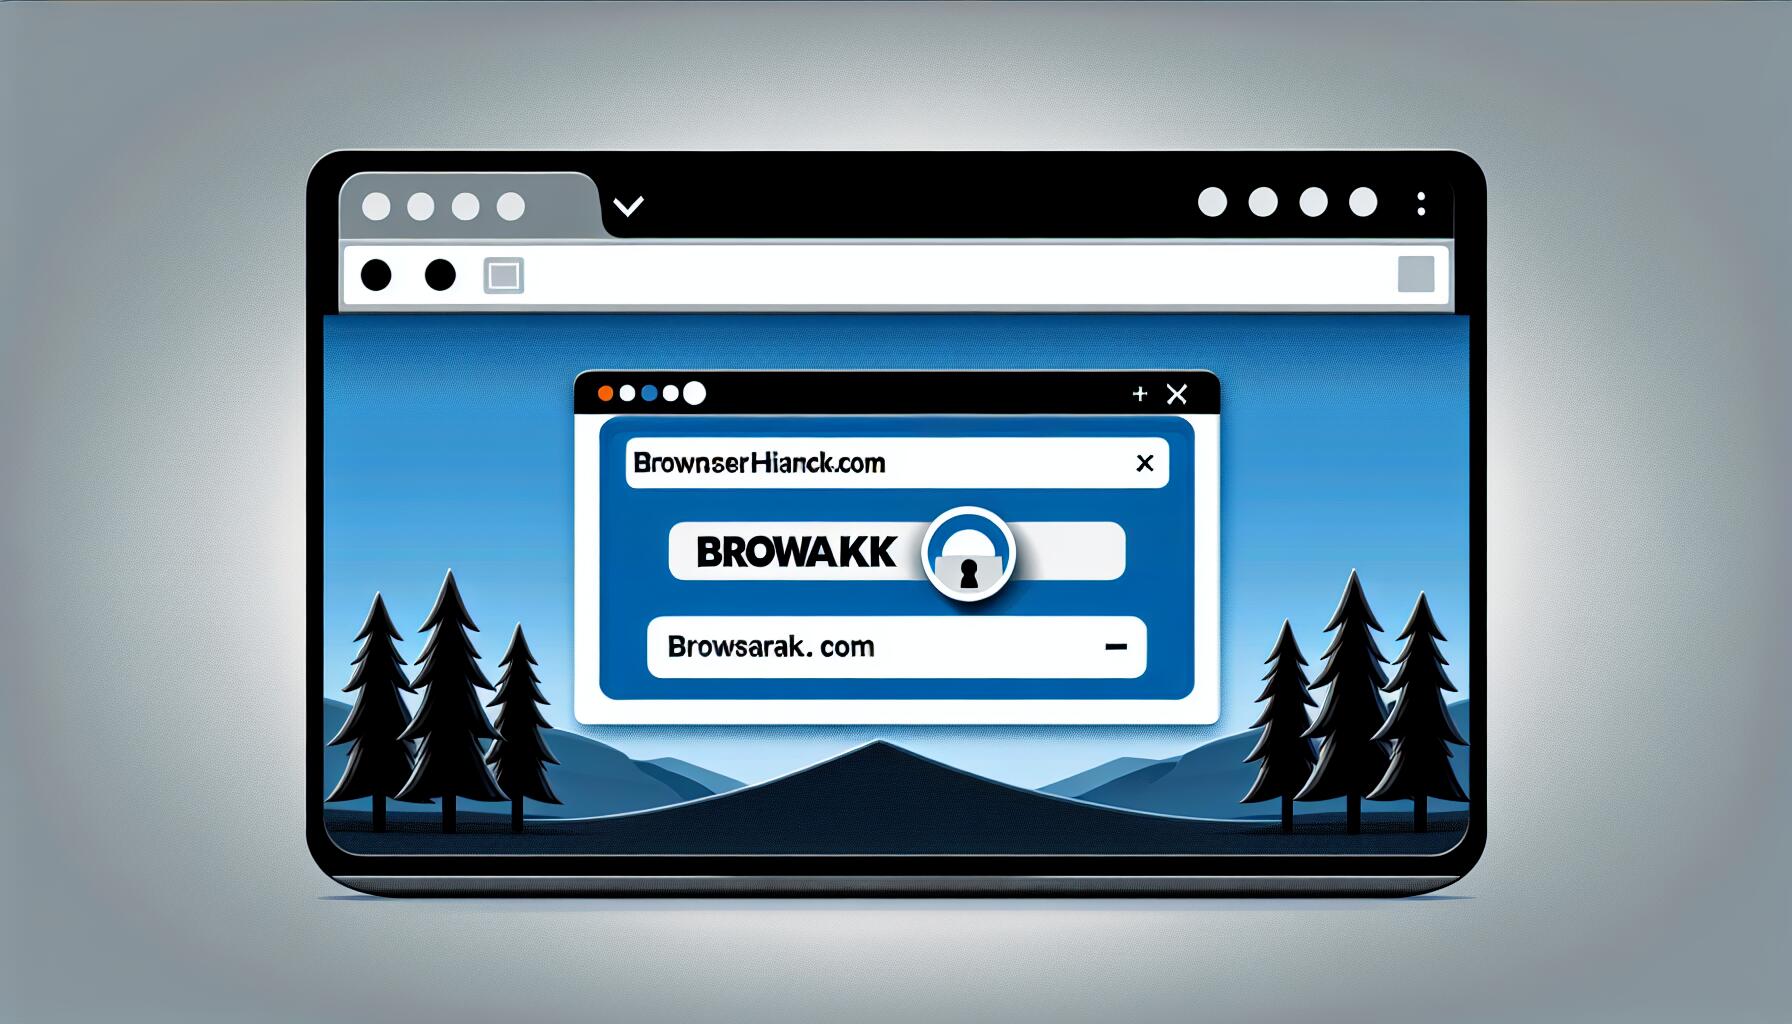 browsak.com